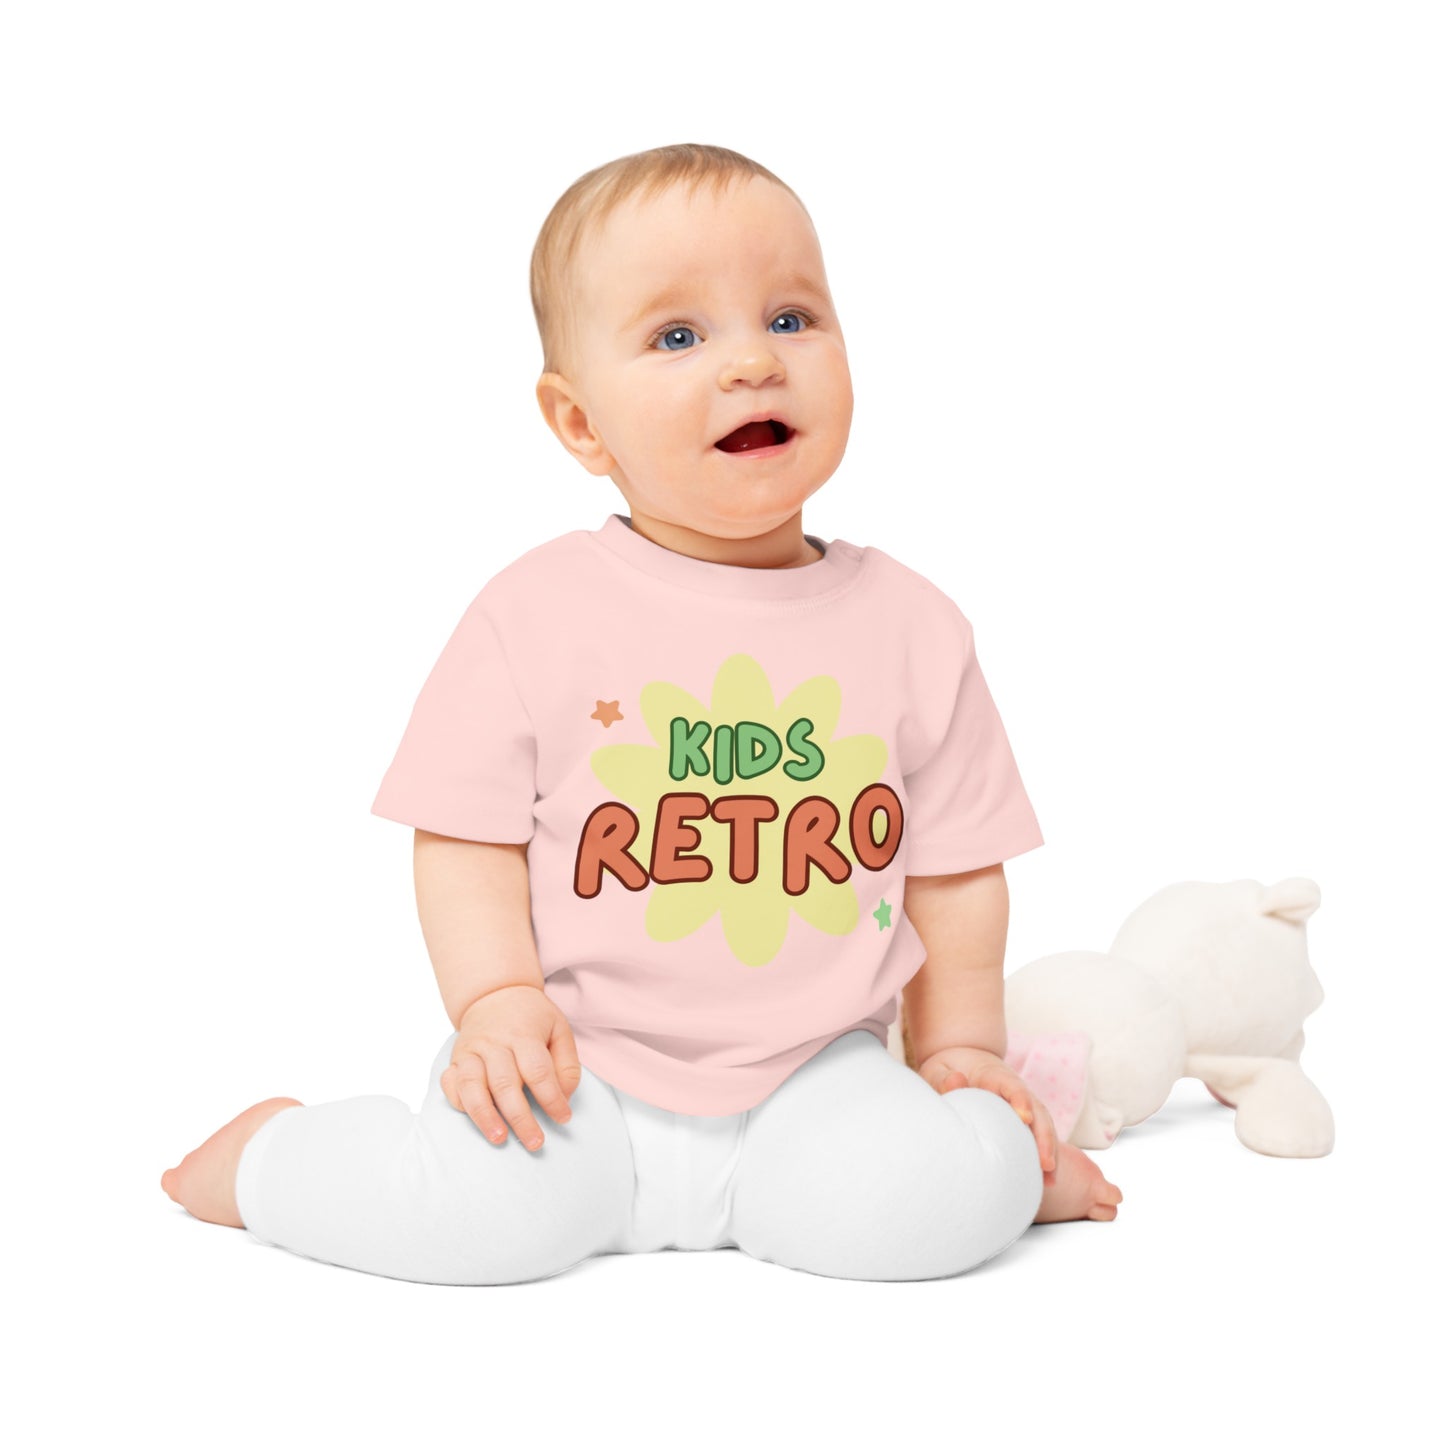 Eco-Friendly Baby Kids Retro T-Shirt 0-3yrs